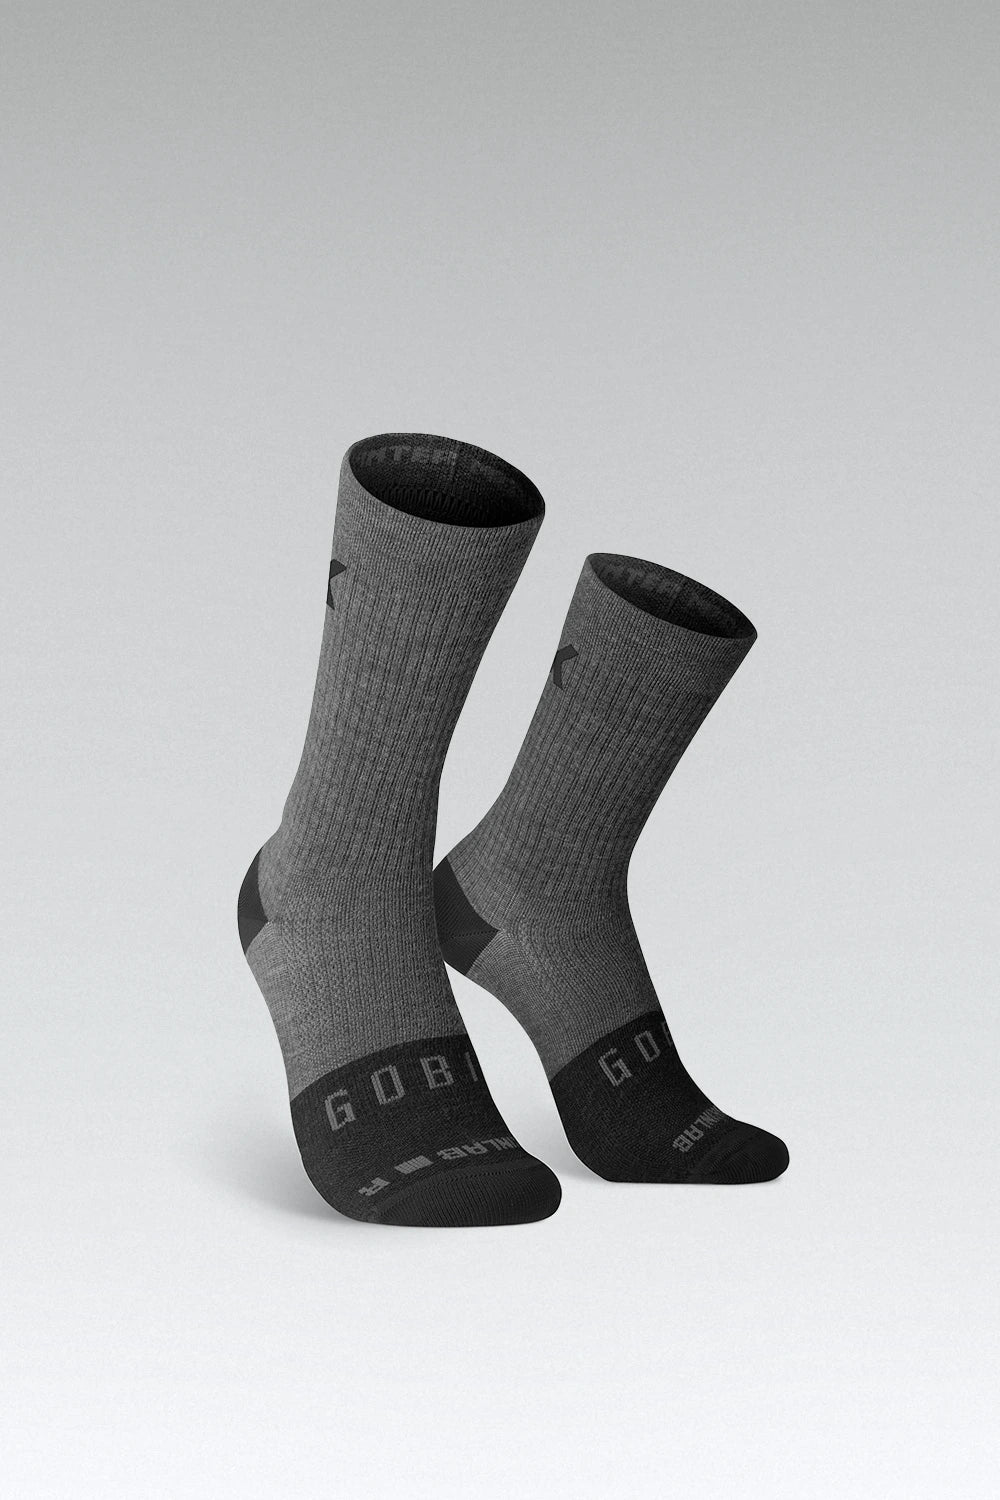 Busy Socks Calcetines de esquí de lana merino para hombres y mujeres,  calcetines cálidos de invierno para esquí, snowboard, deportes al aire  libre